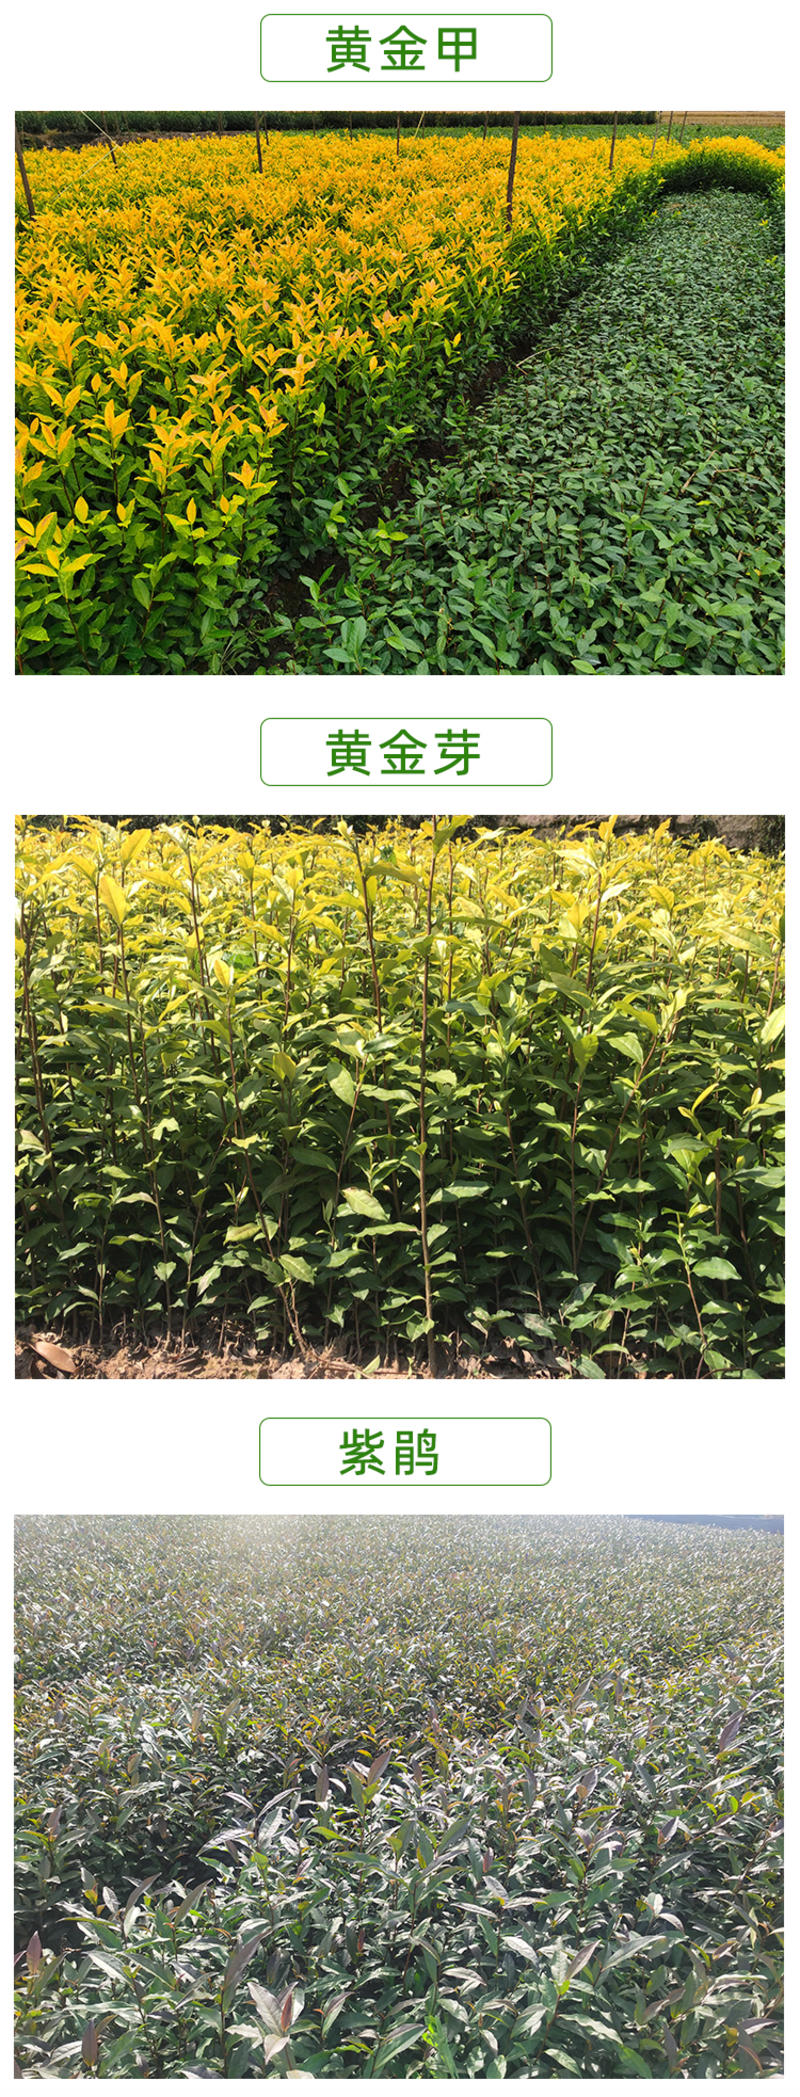 中茶108茶树苗龙井系列茶苗品种齐全绿茶扁碧螺春茶树苗